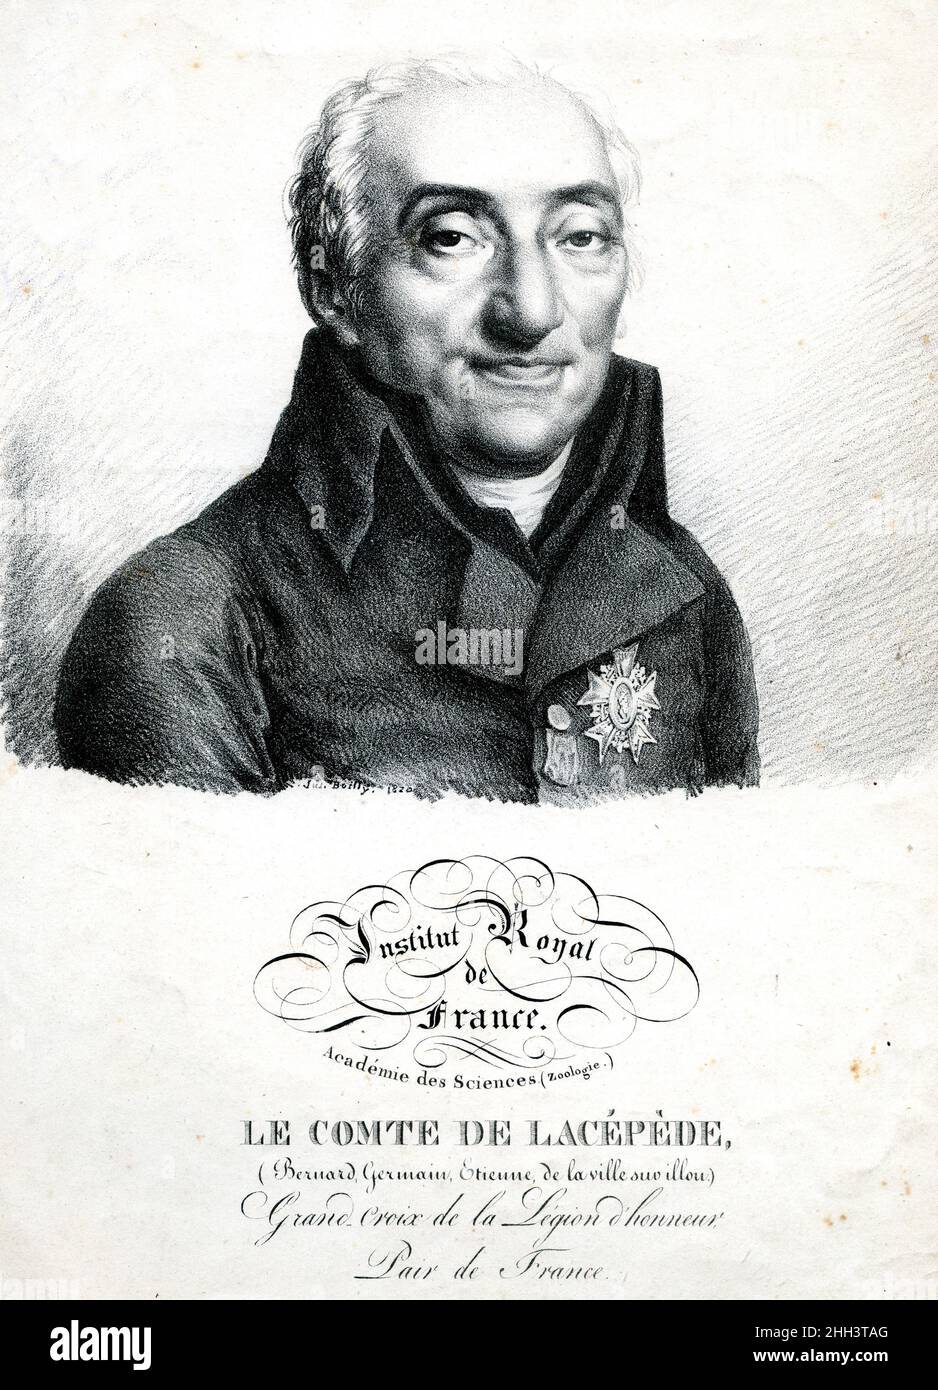 Portrait de Portrait d'Etienne de La Ville, Comte De Lacepede (1756-1825), naturaliste francais. Stockfoto